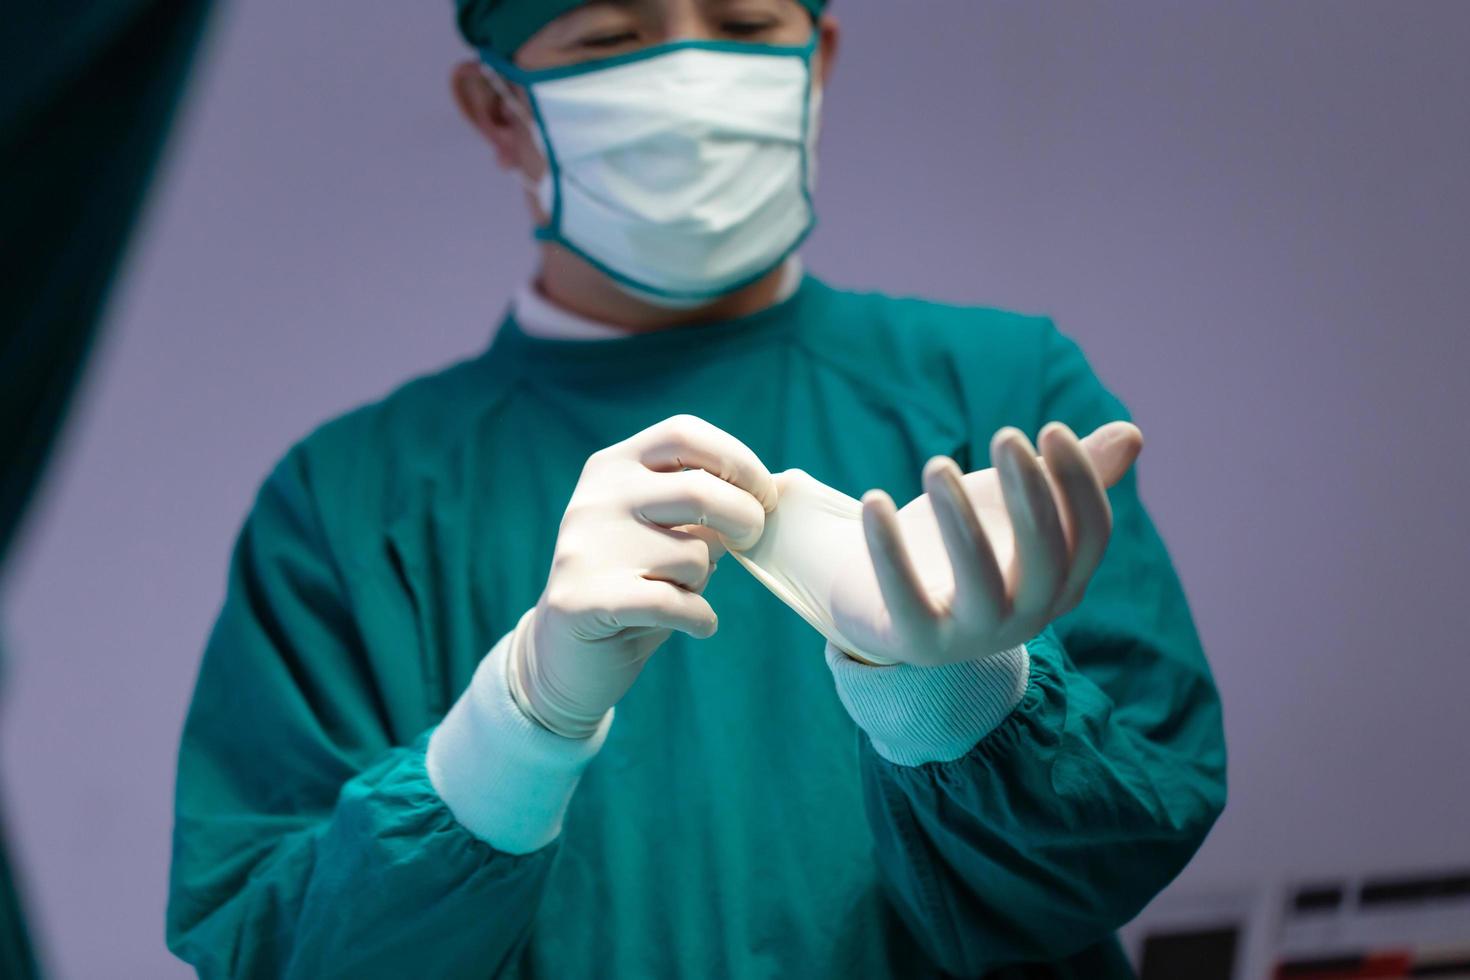 manlig kirurg bär medicinska skyddshandskar och kirurgisk mask i operationssalen på sjukhuset, medicinskt team som utför kirurgisk operation i operationssalen foto